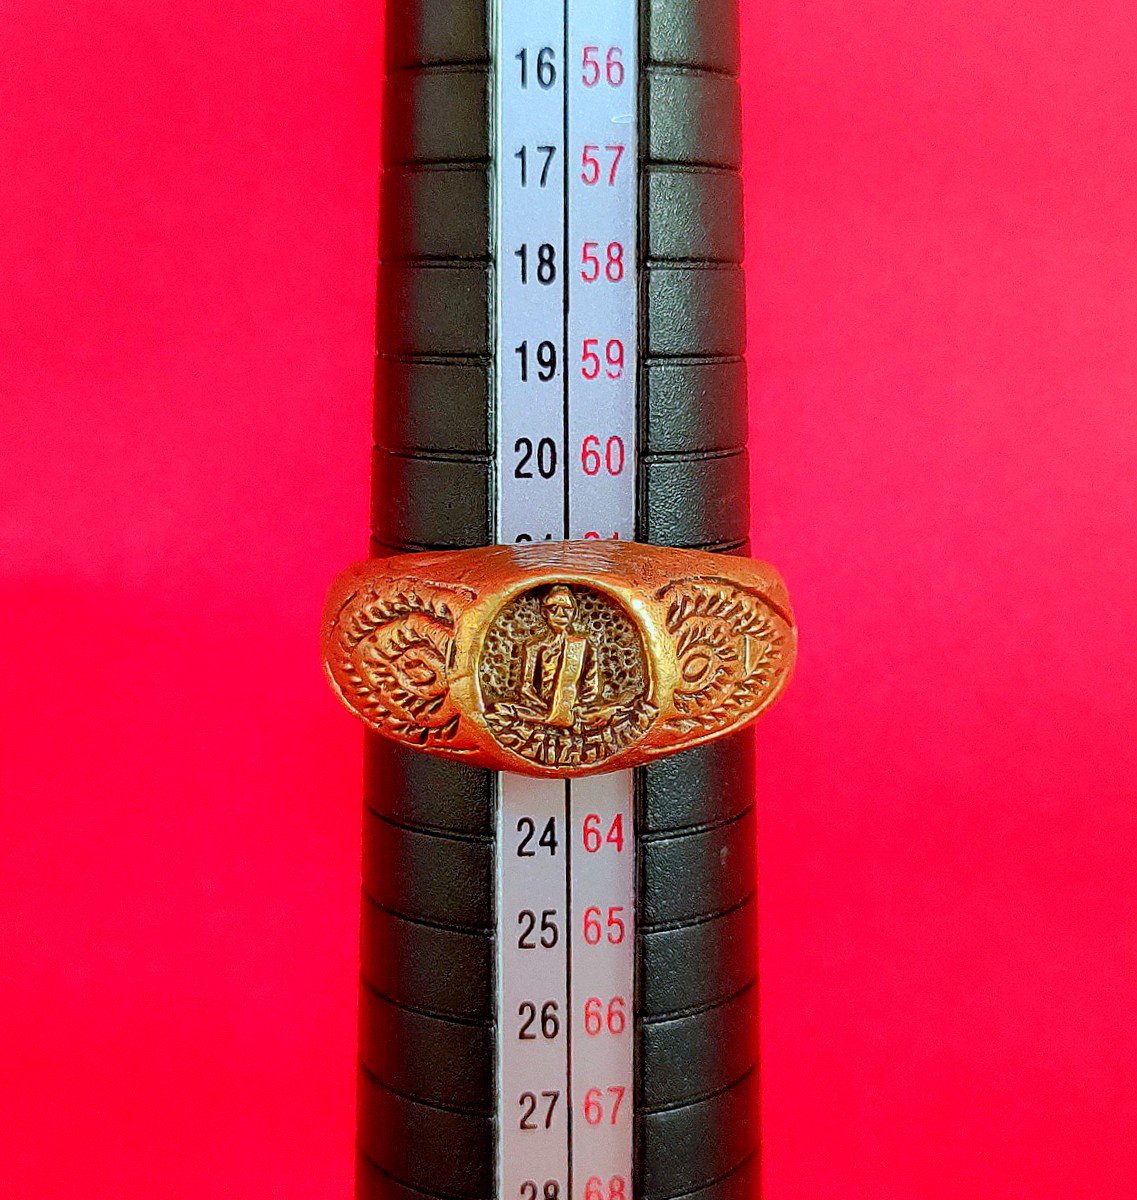 R111 Ring Thai Buddha Amulet Phra Talisman Powerful Wealth LP Derm Magical Rich